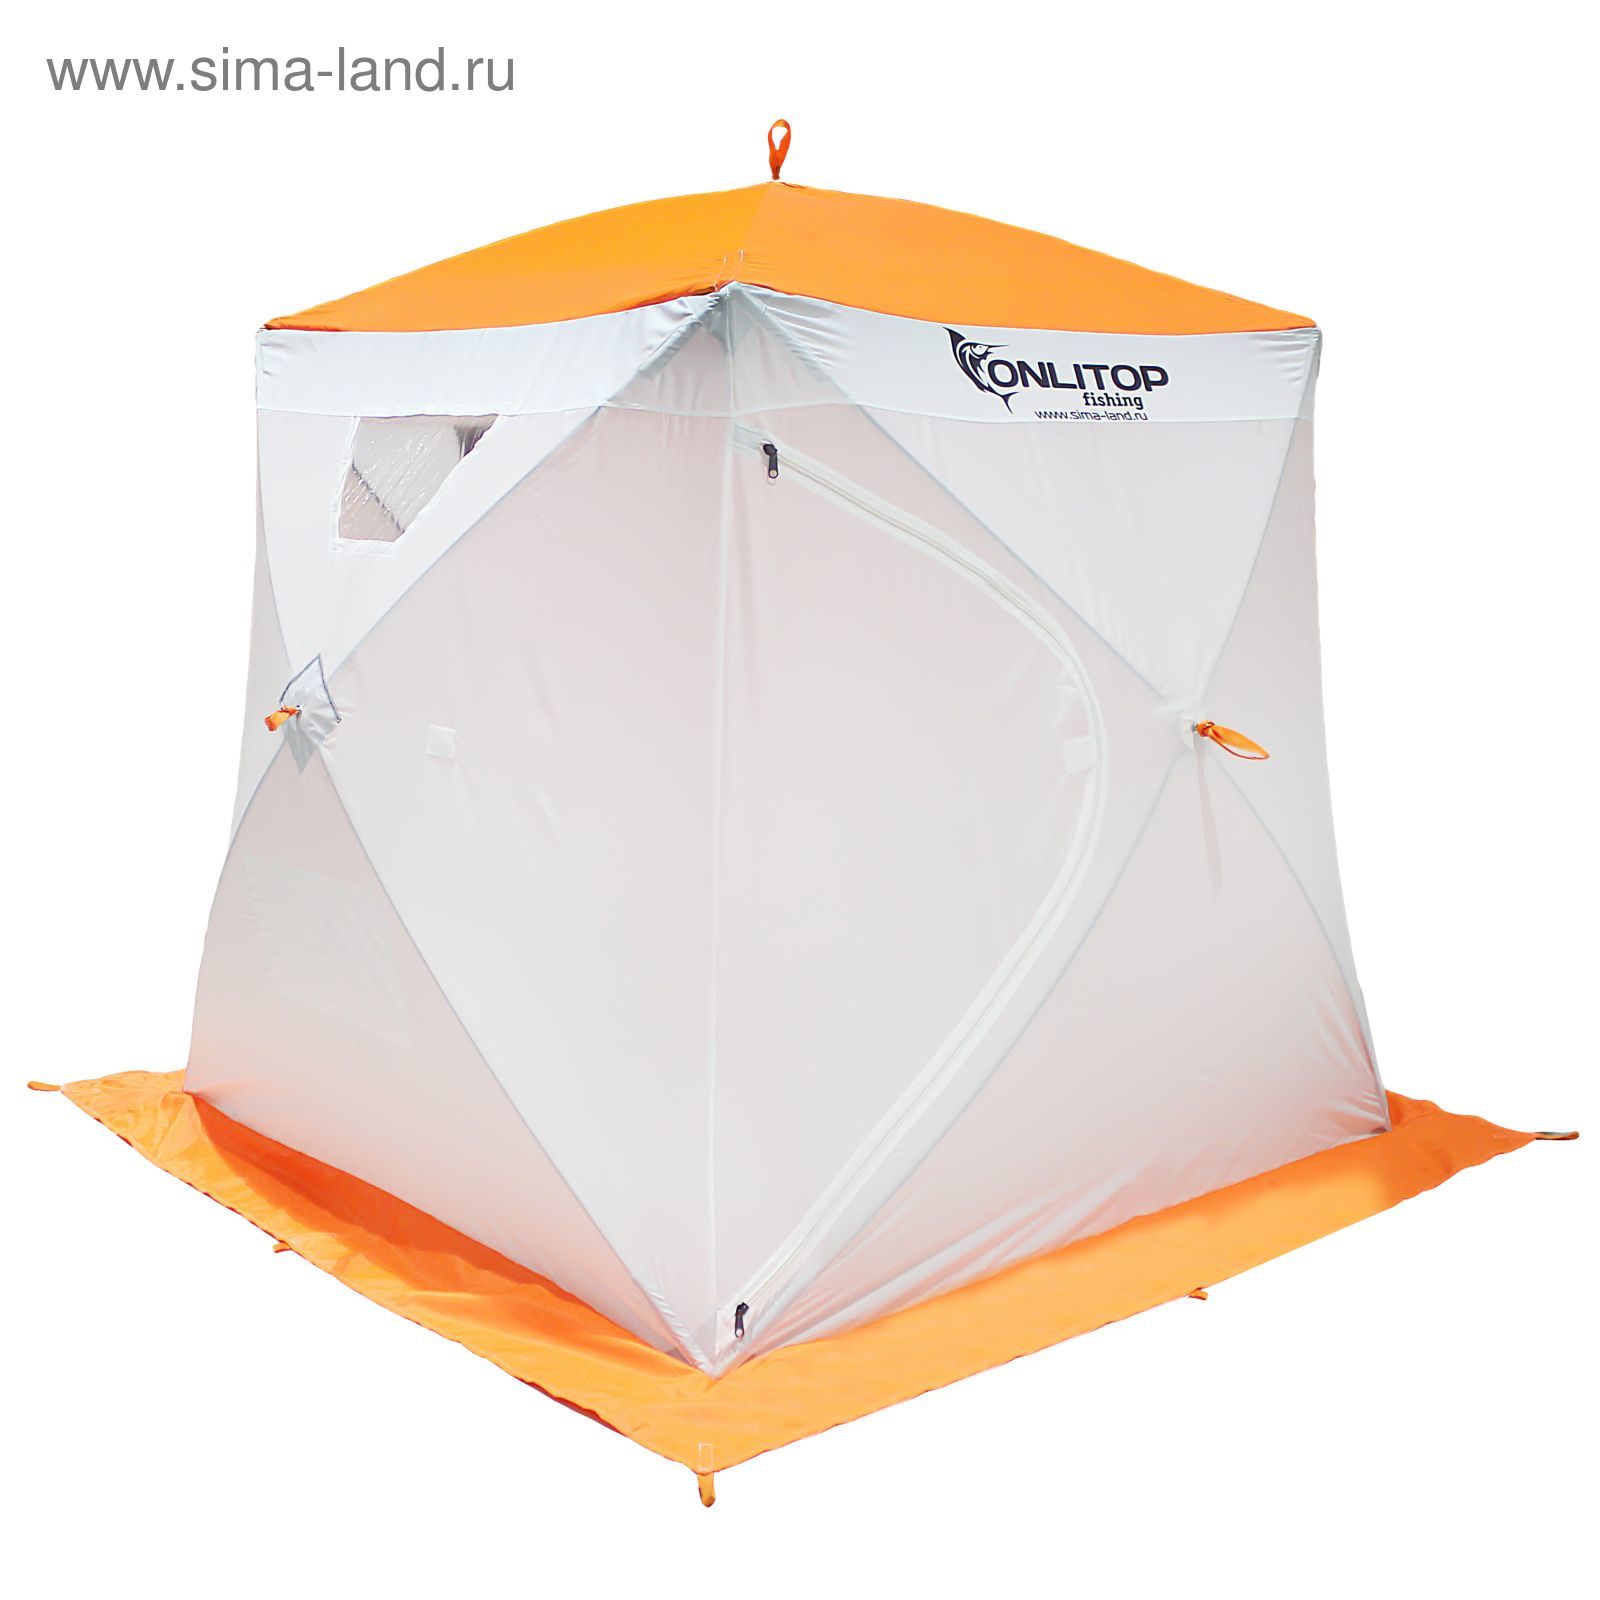 Палатка "Призма Люкс" 170, 1-слойная, цвет бело-оранжевый